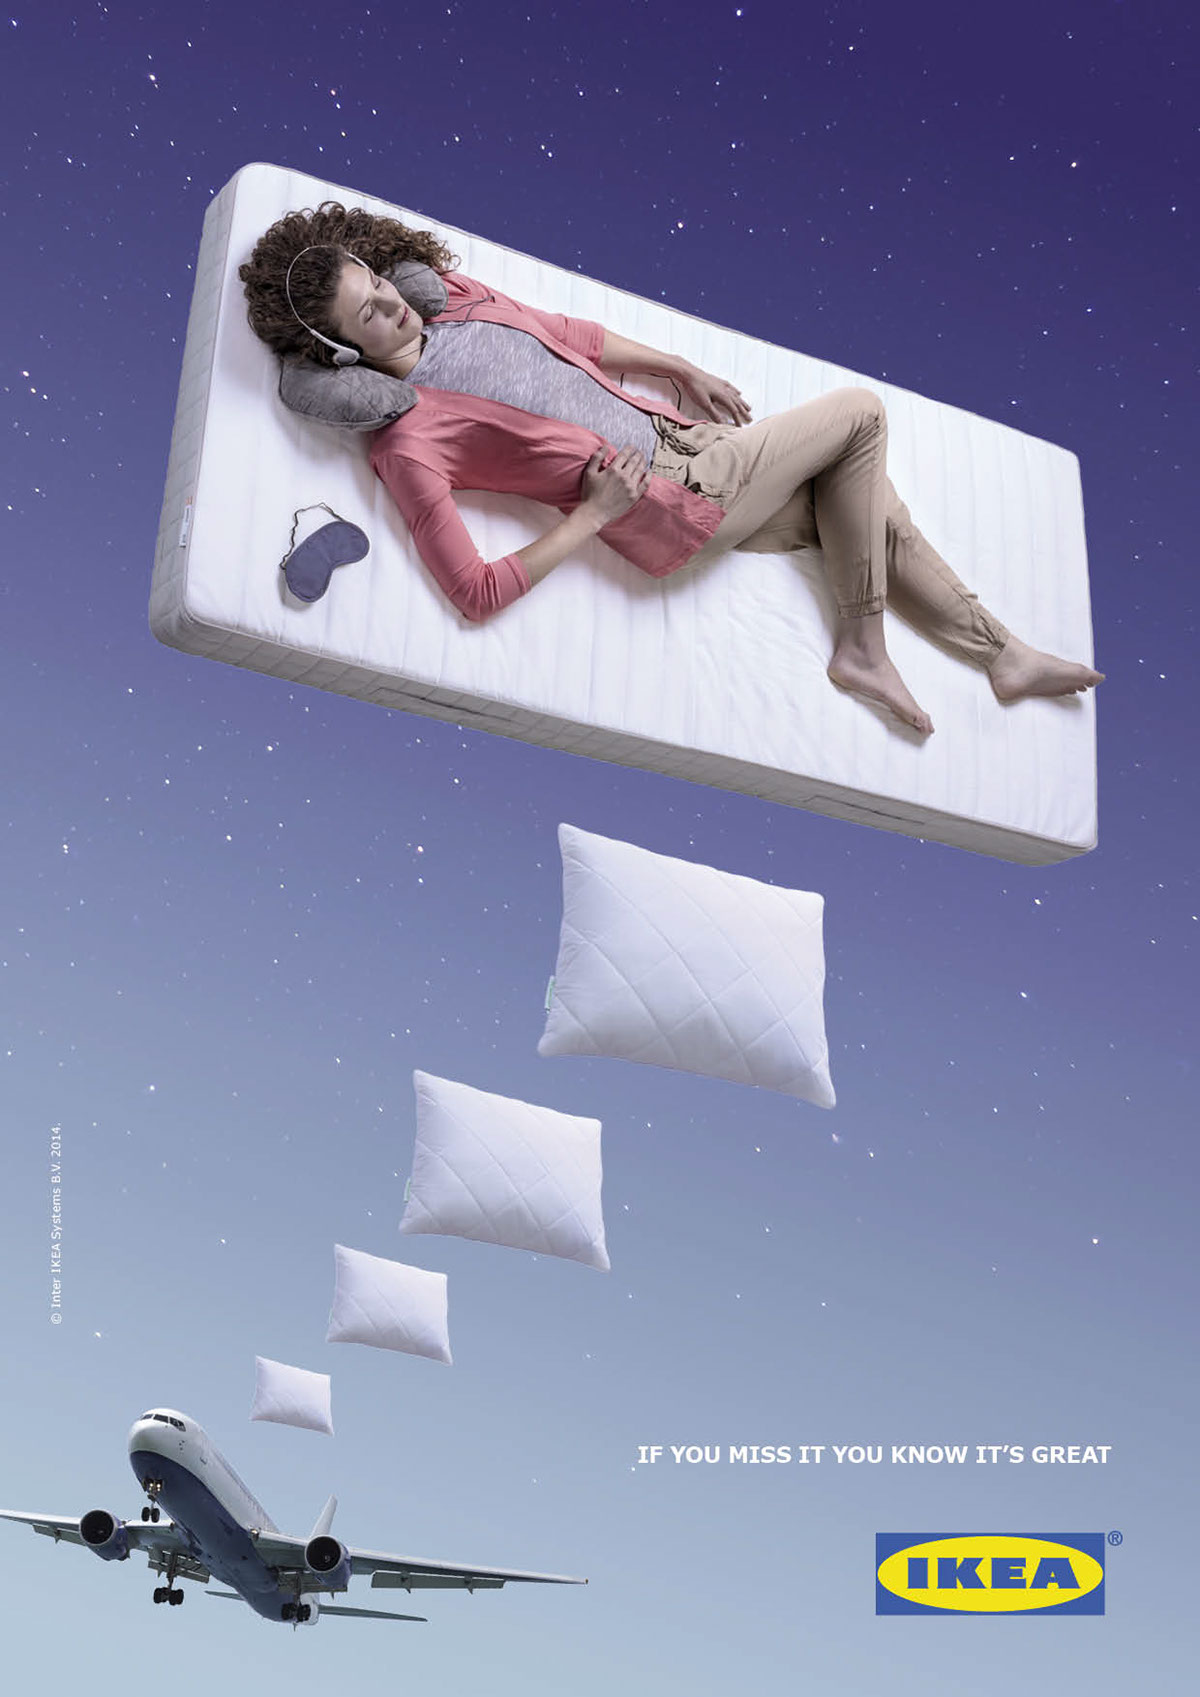 ikea Bedrooms furniture speech-bubble SKY pillow mattress homesick